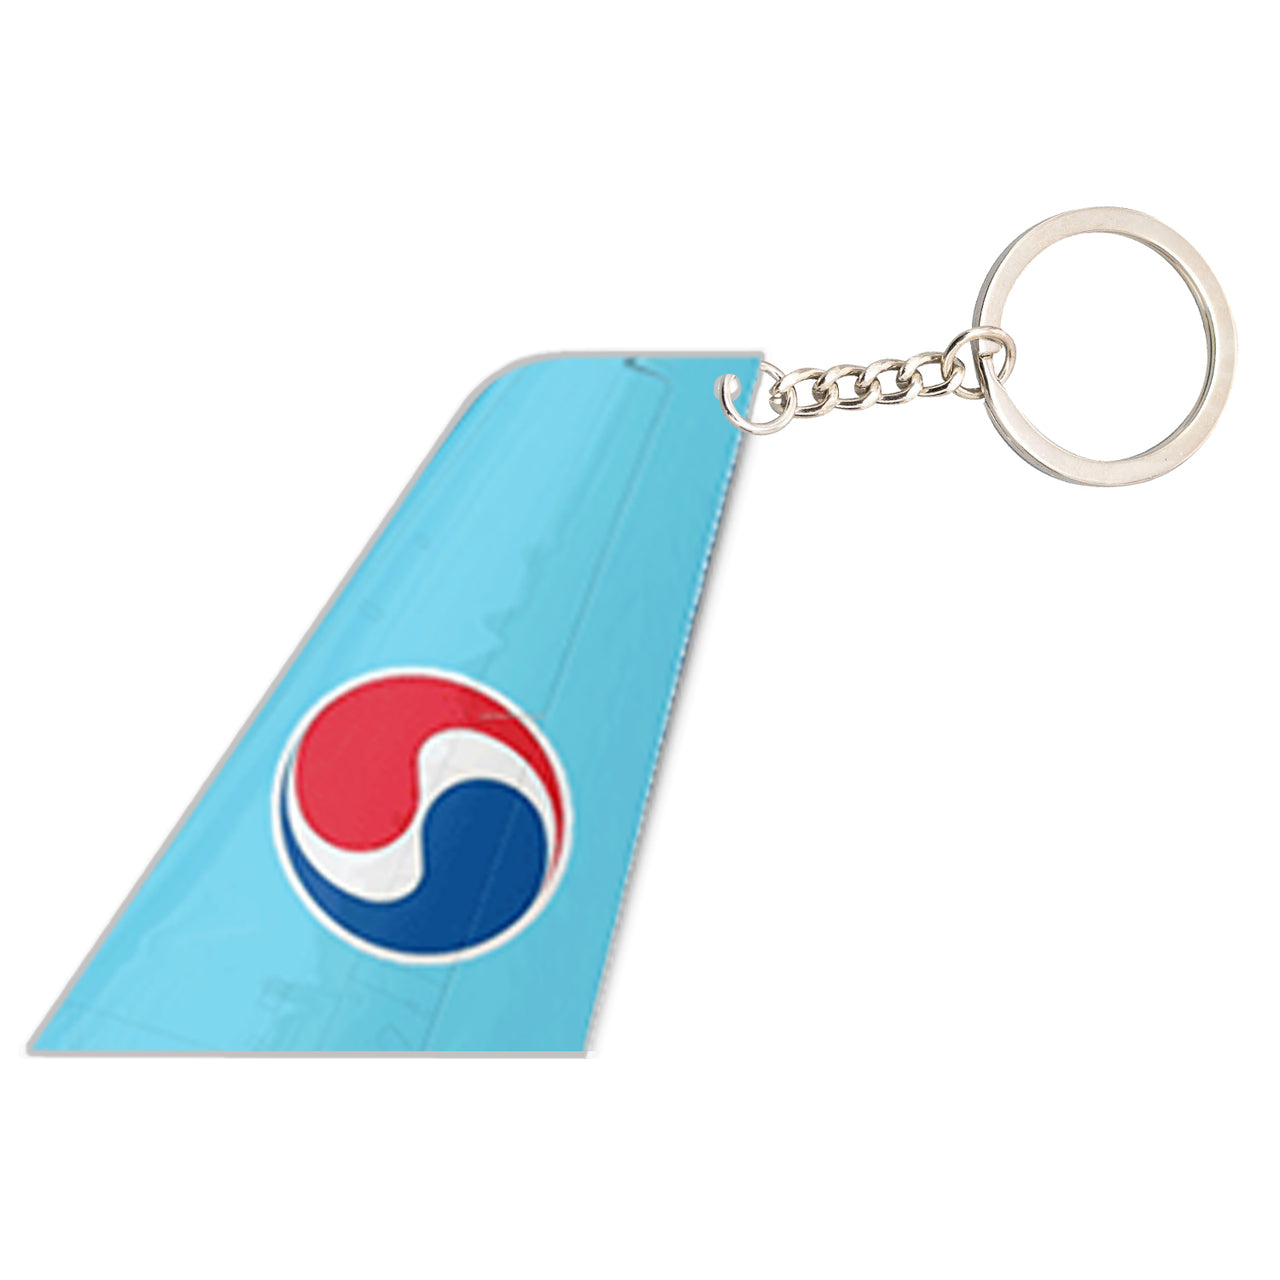 Korean Air Designed Tail Key Chains